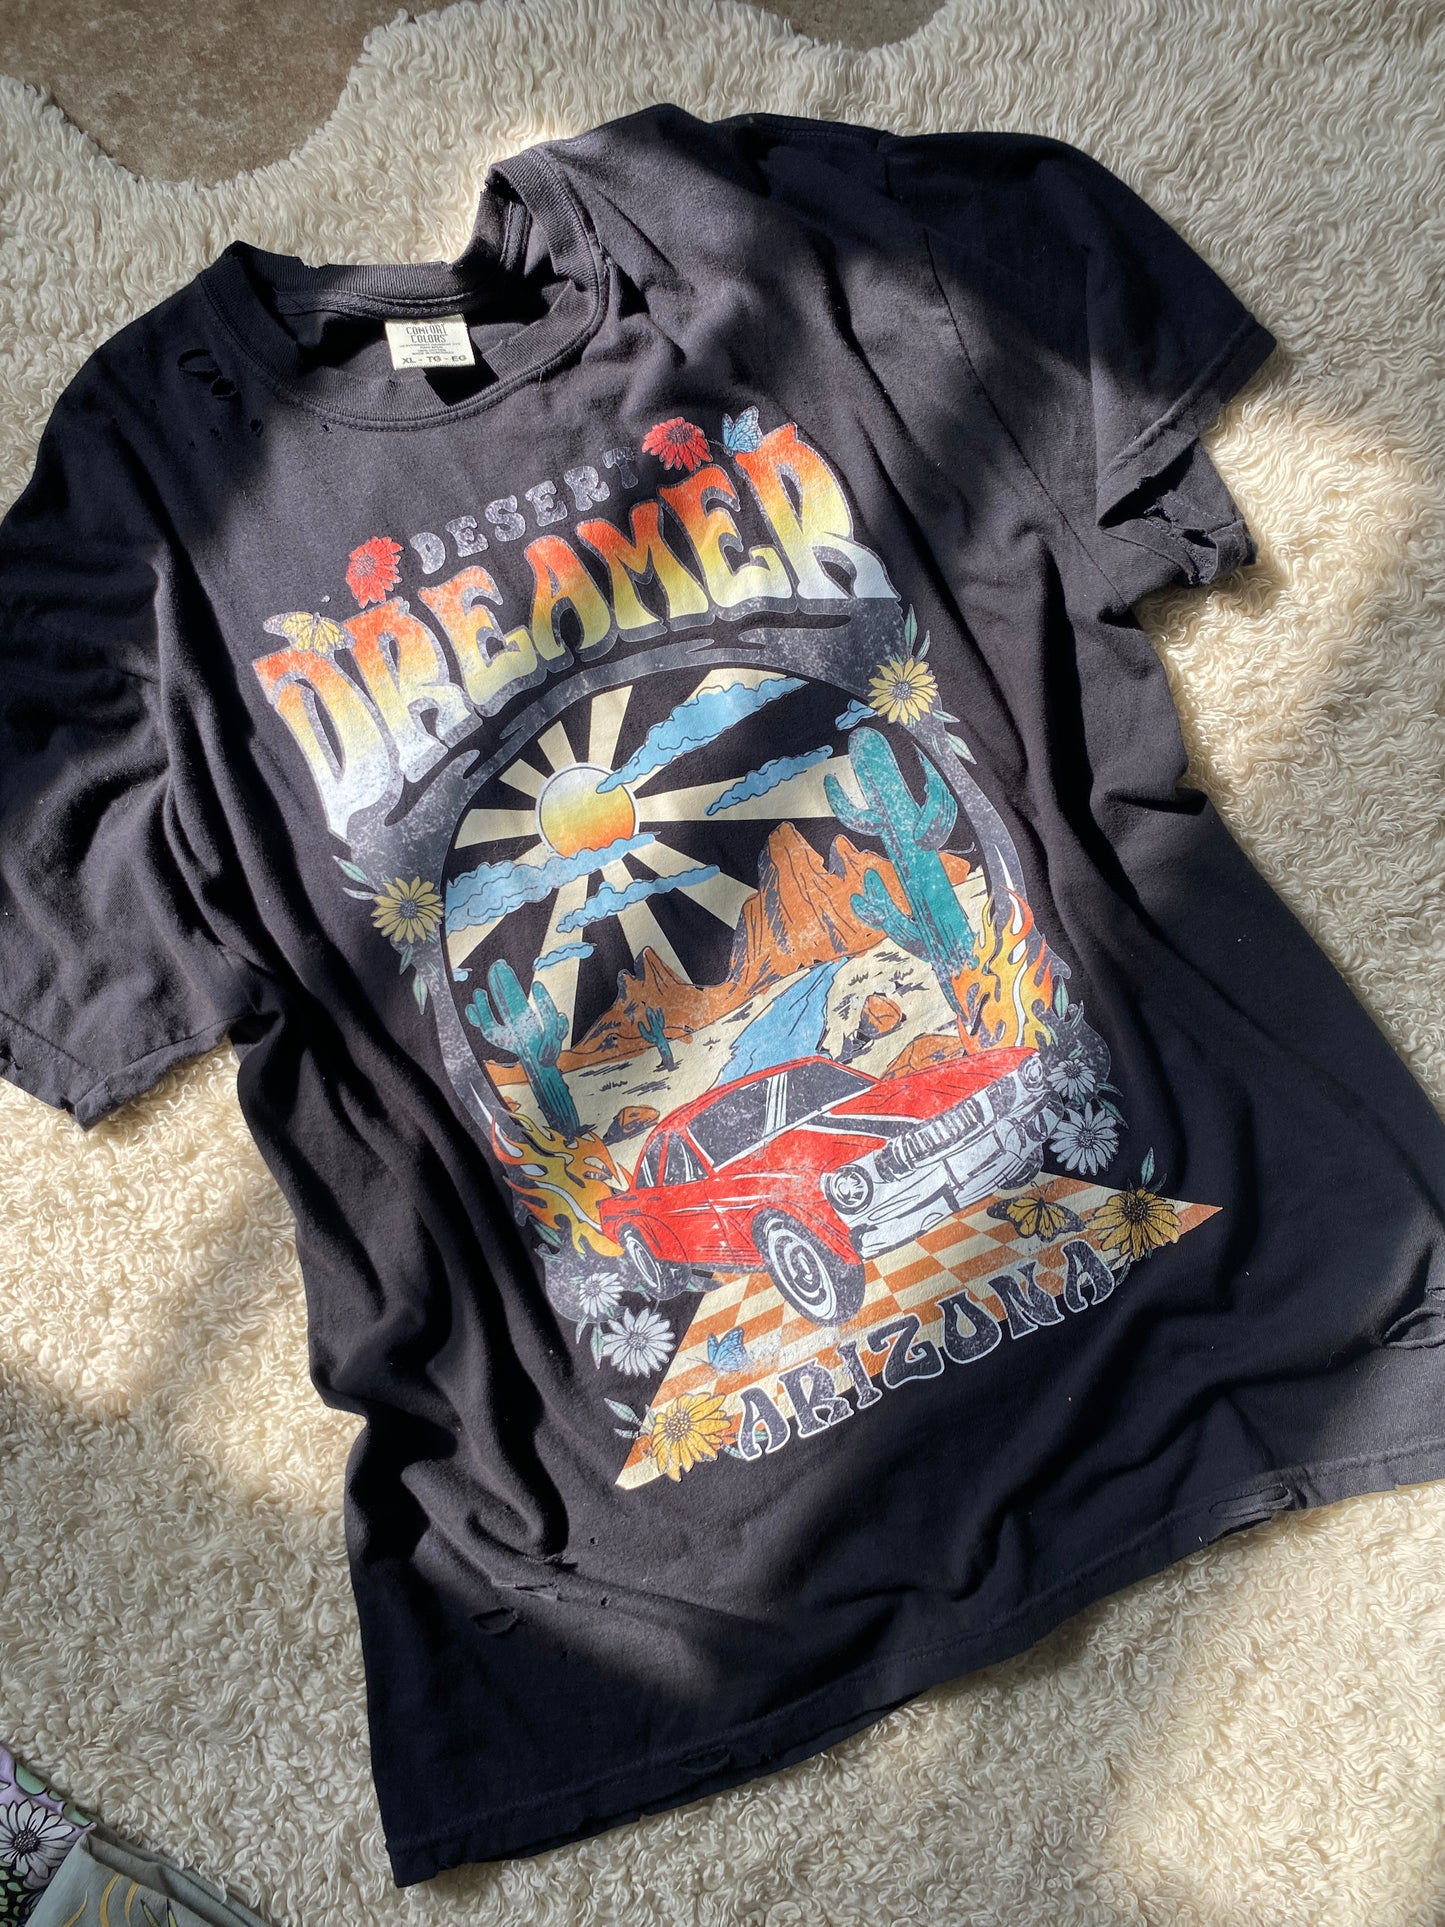 Desert Dreamer Vintage Car Tshirt